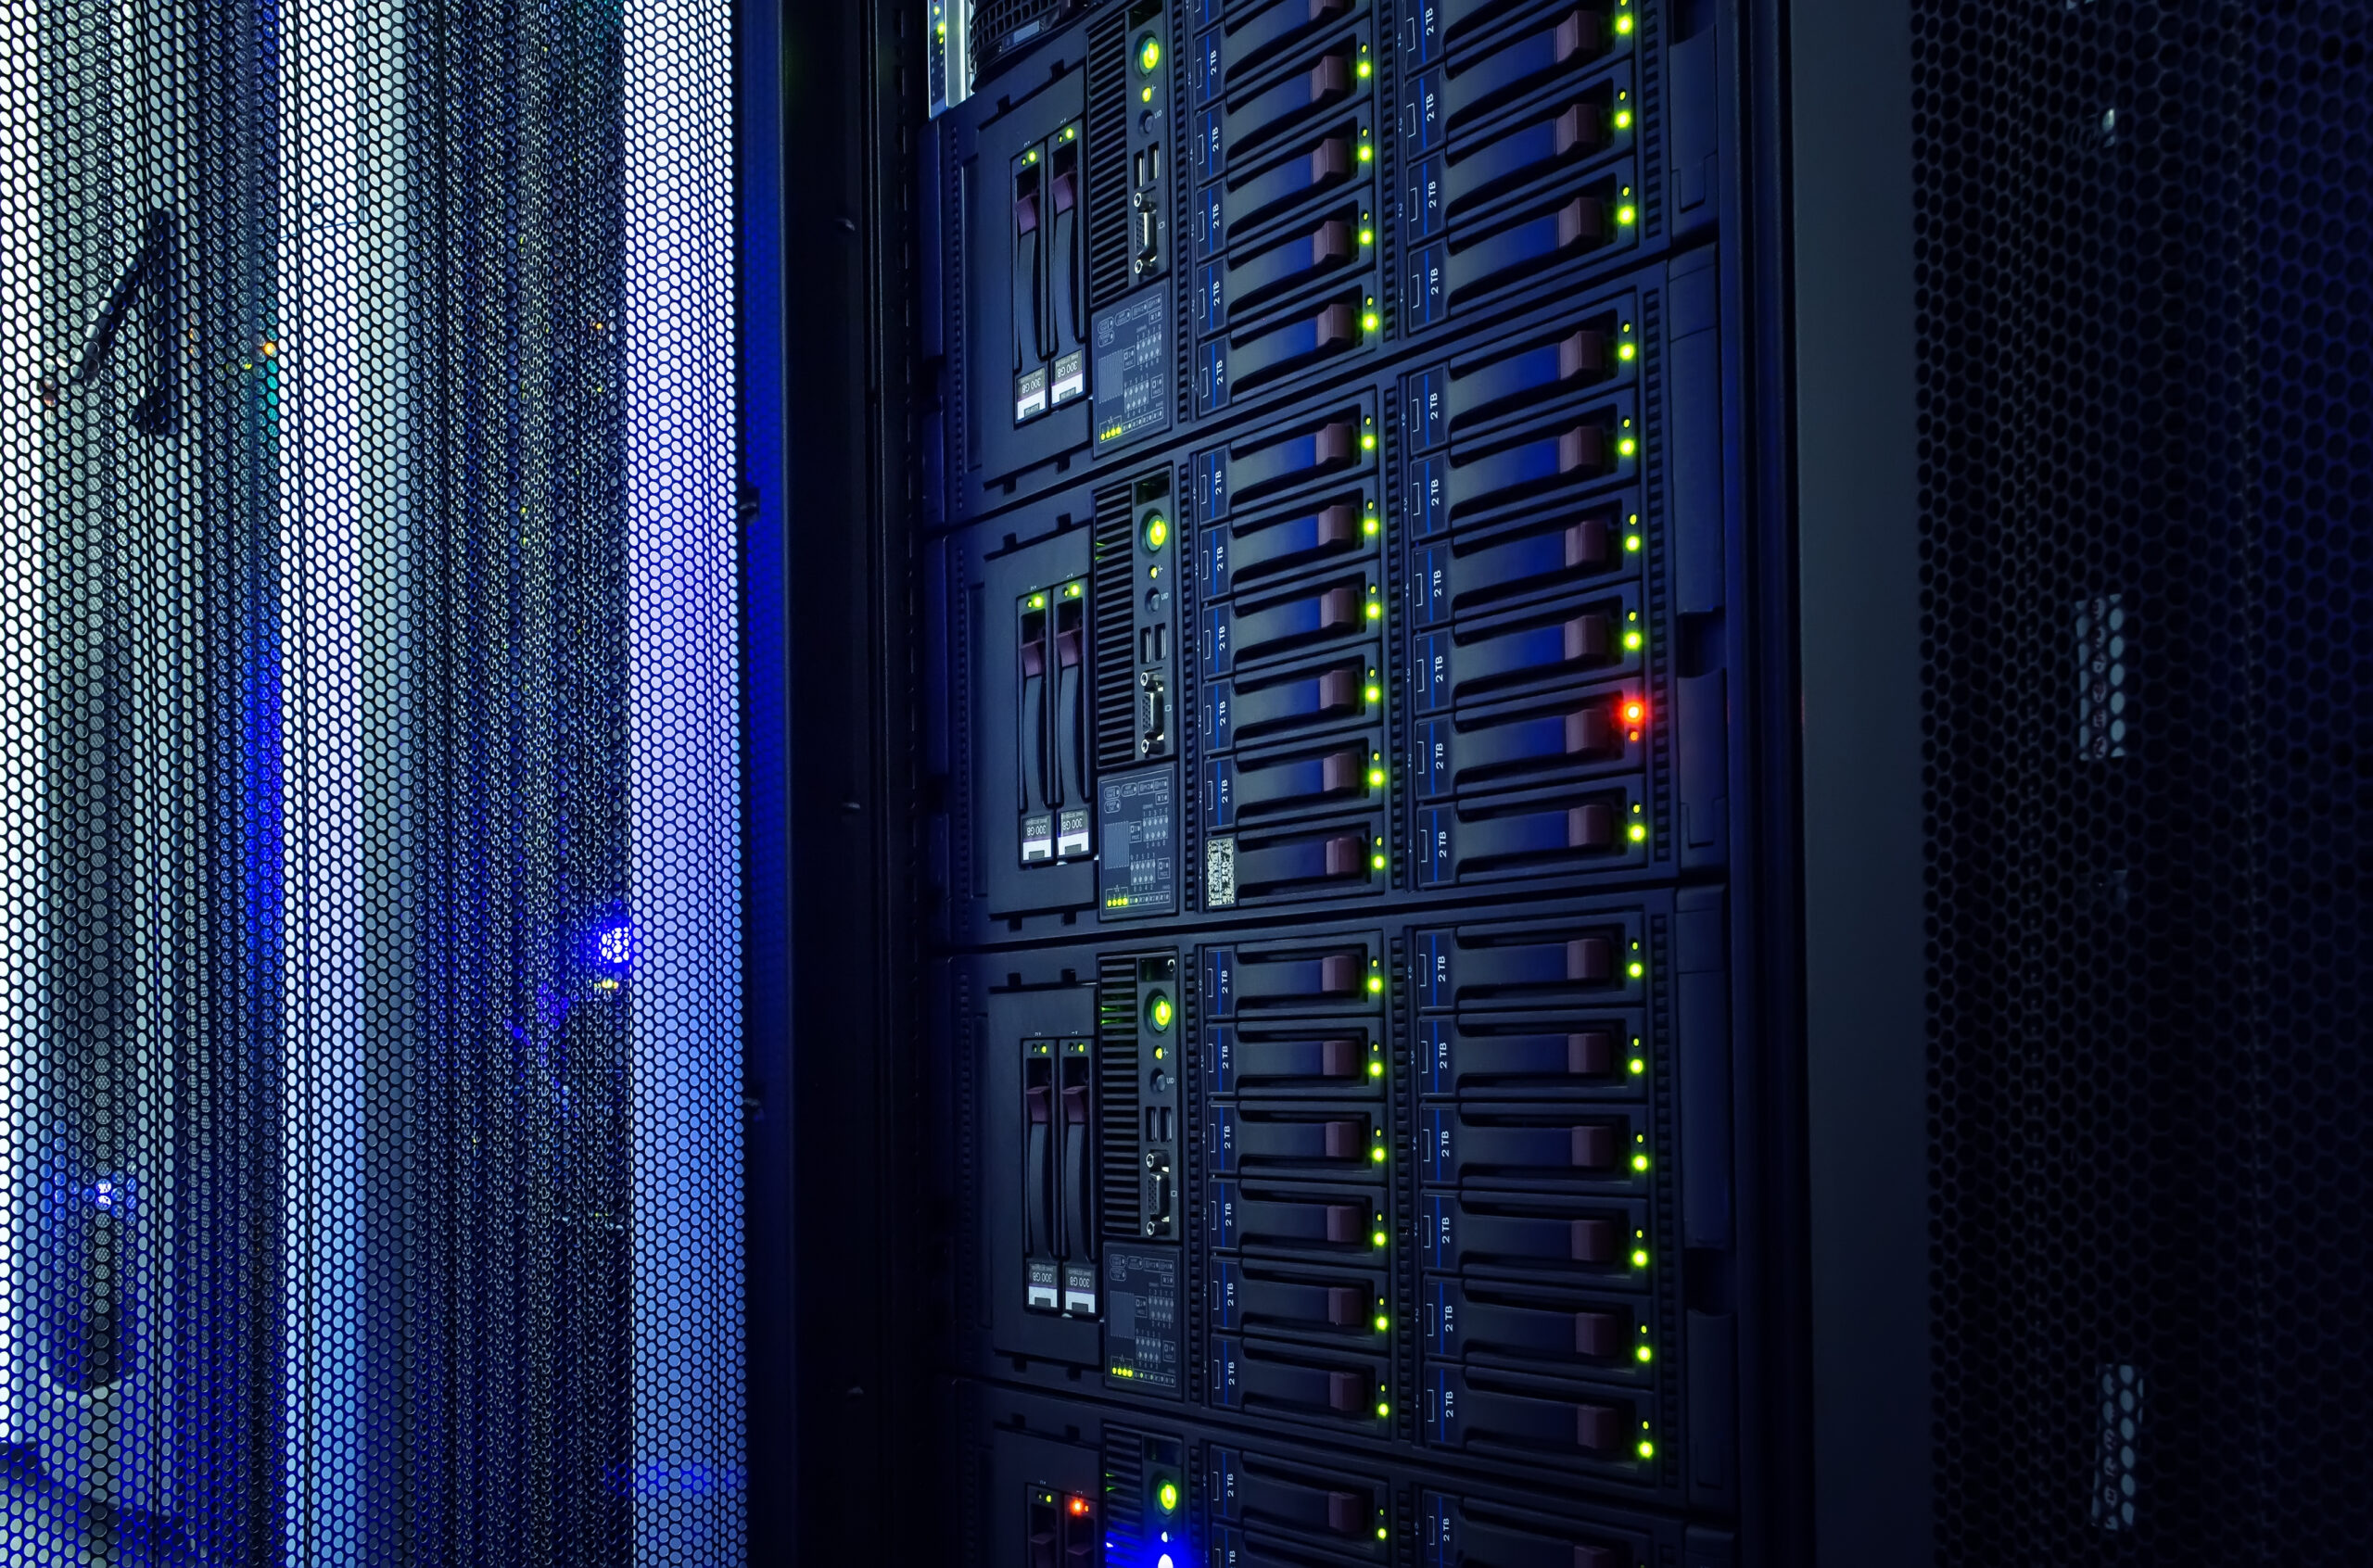 modern mainframe disk storage in the data center